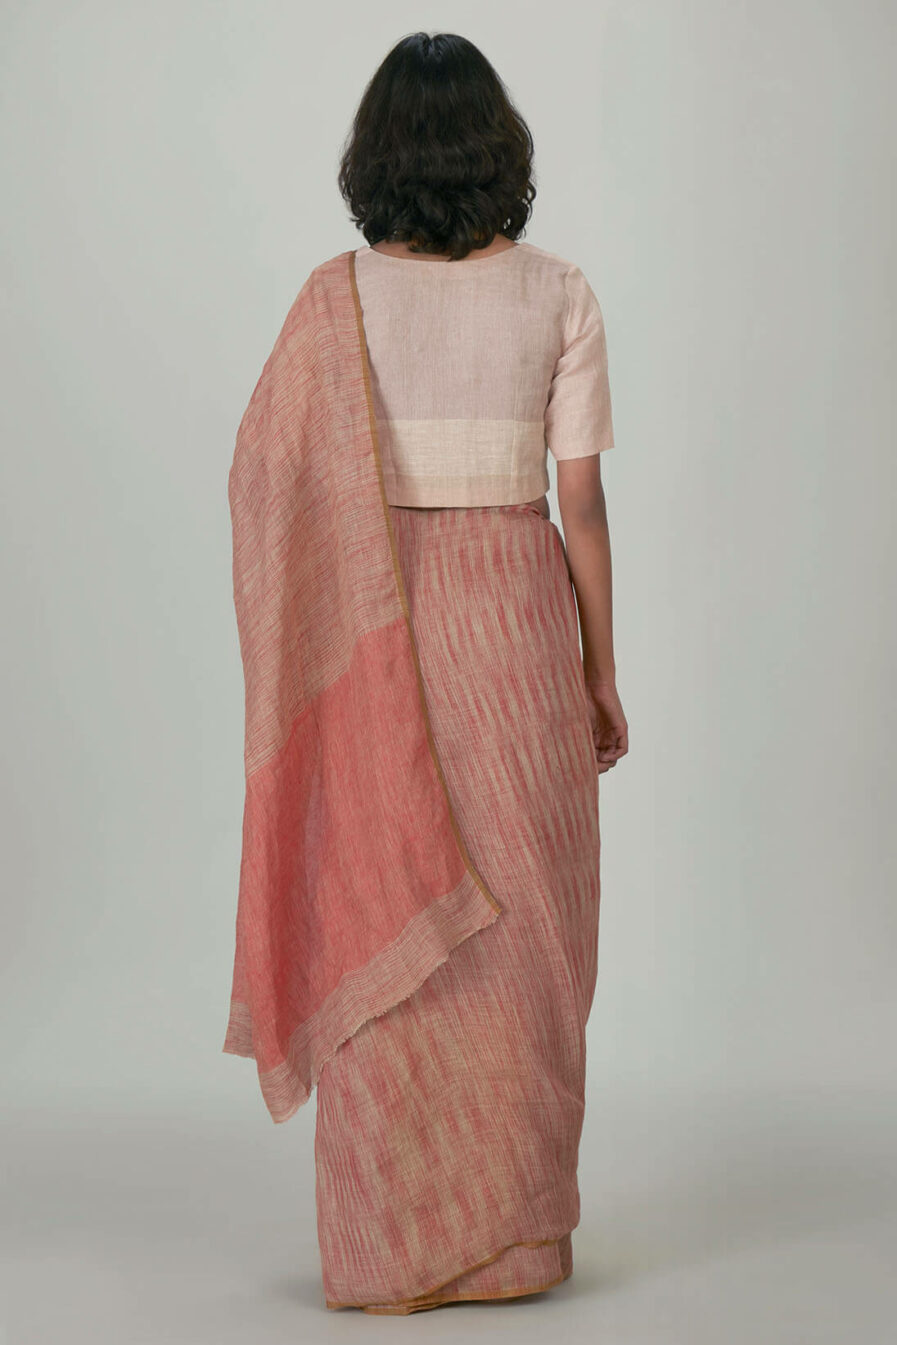 Anavil Rust Tie & dye linen sari